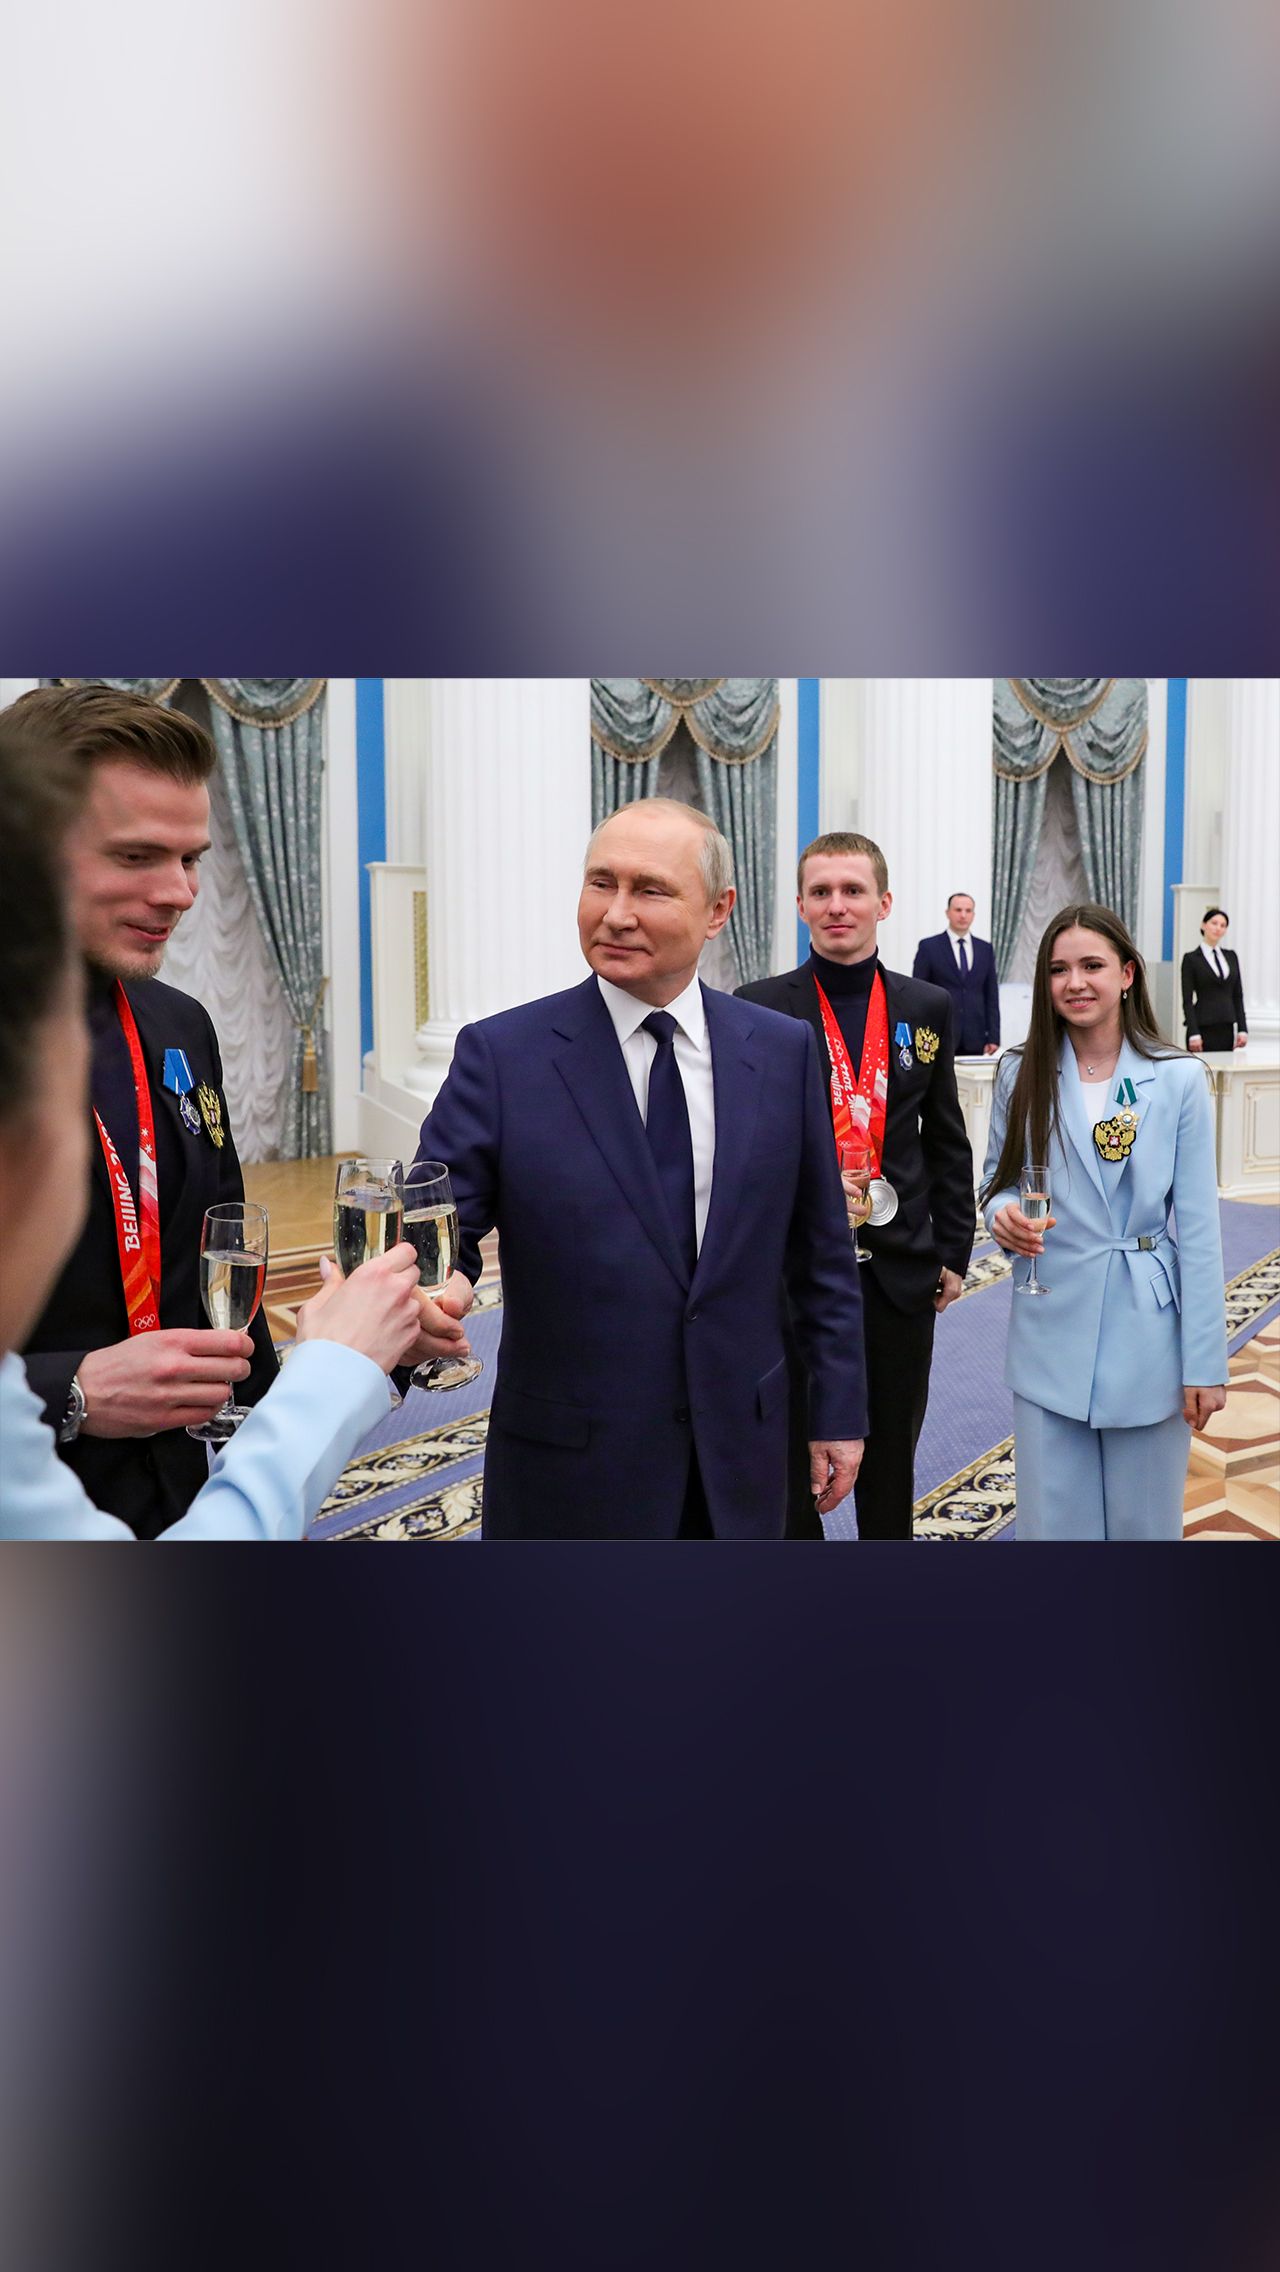 «Главное — это ваш труд, талант, целеустремлённость. Вас и ваших тренеров. Вот кто герои этого события. Для страны и для каждого гражданина России важны ваши успехи», — обратился Путин к спортсменам.